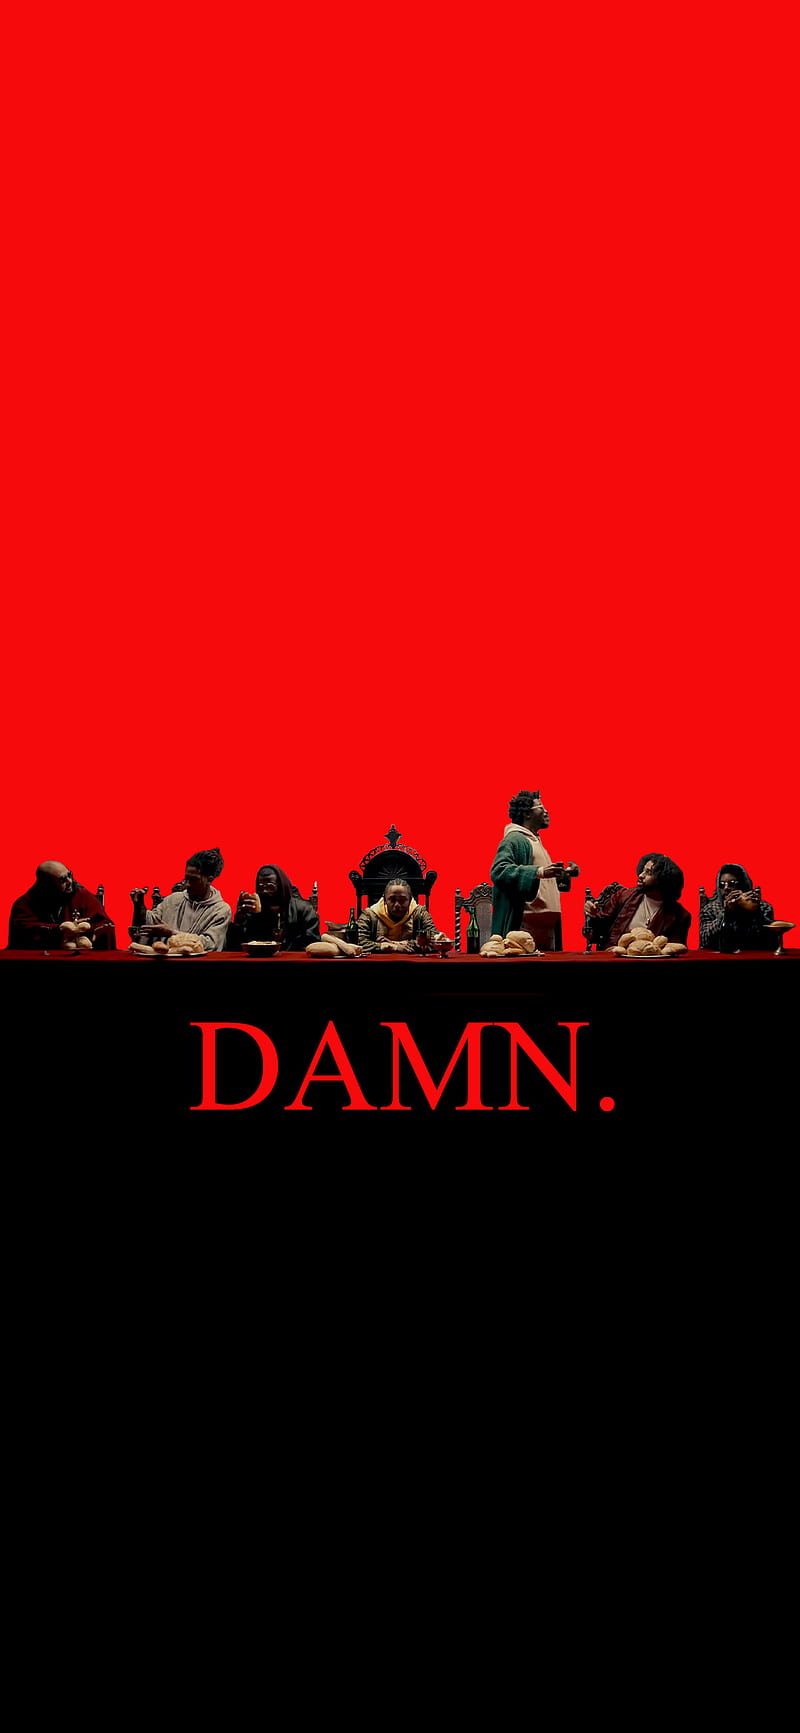 Kendrick Lamar D**n, album cover, hiphop, humble, jesus, kendrcik lamar, man, rap, sayings, text, HD phone wallpaper